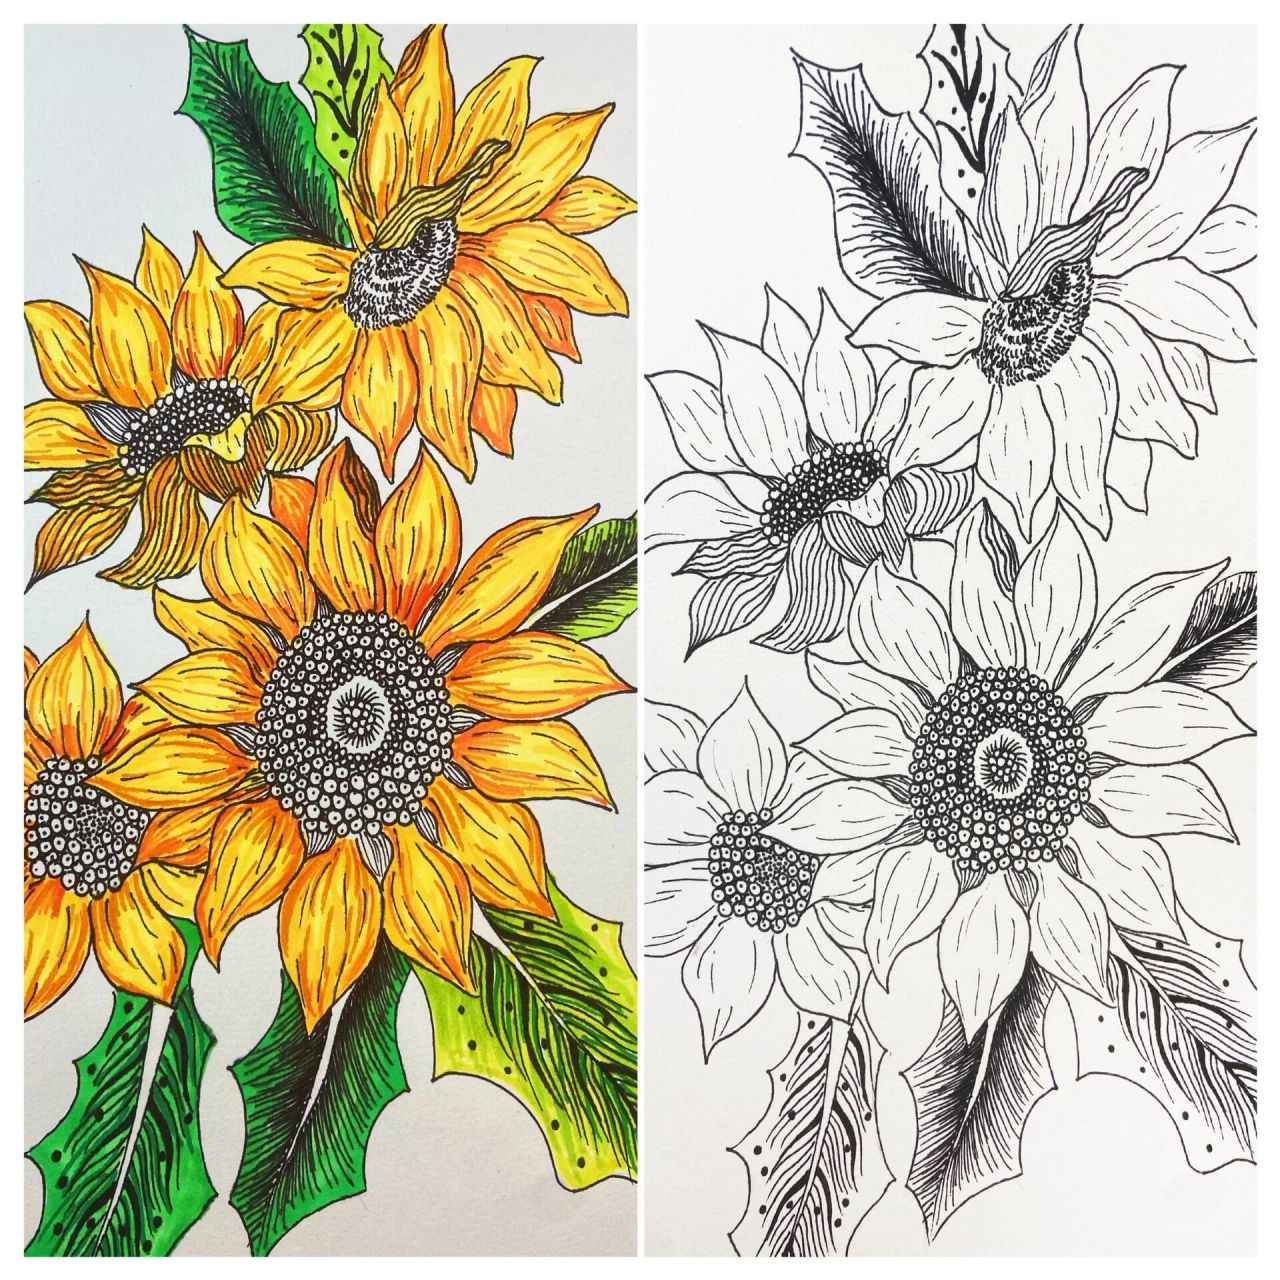 创意美术/彩色线描 向日葵 创意线描画向日葵 向日葵因 形状像小太阳